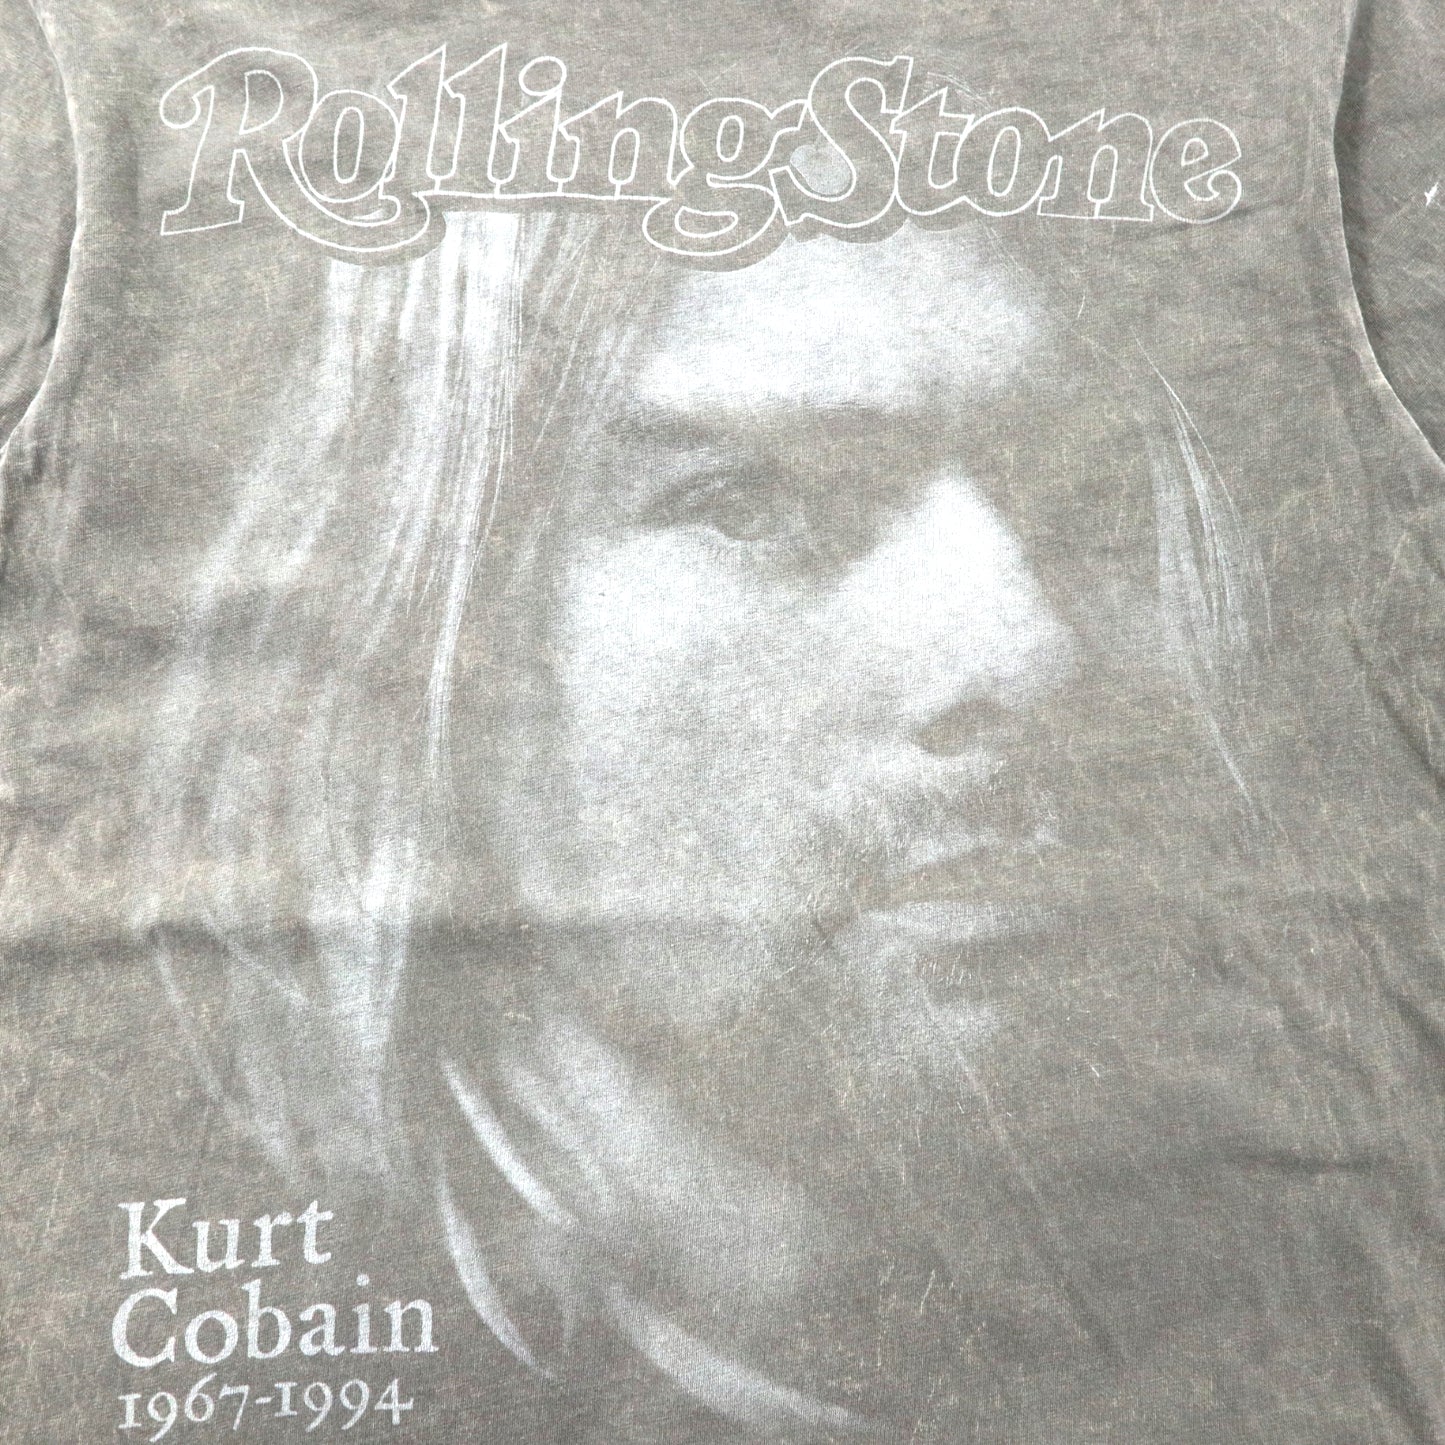 ROLLING STONE COLLECTION ニルヴァーナ カートコバーン バンドTシャツ M グレー コットン Kurt Cobain 1967-1994